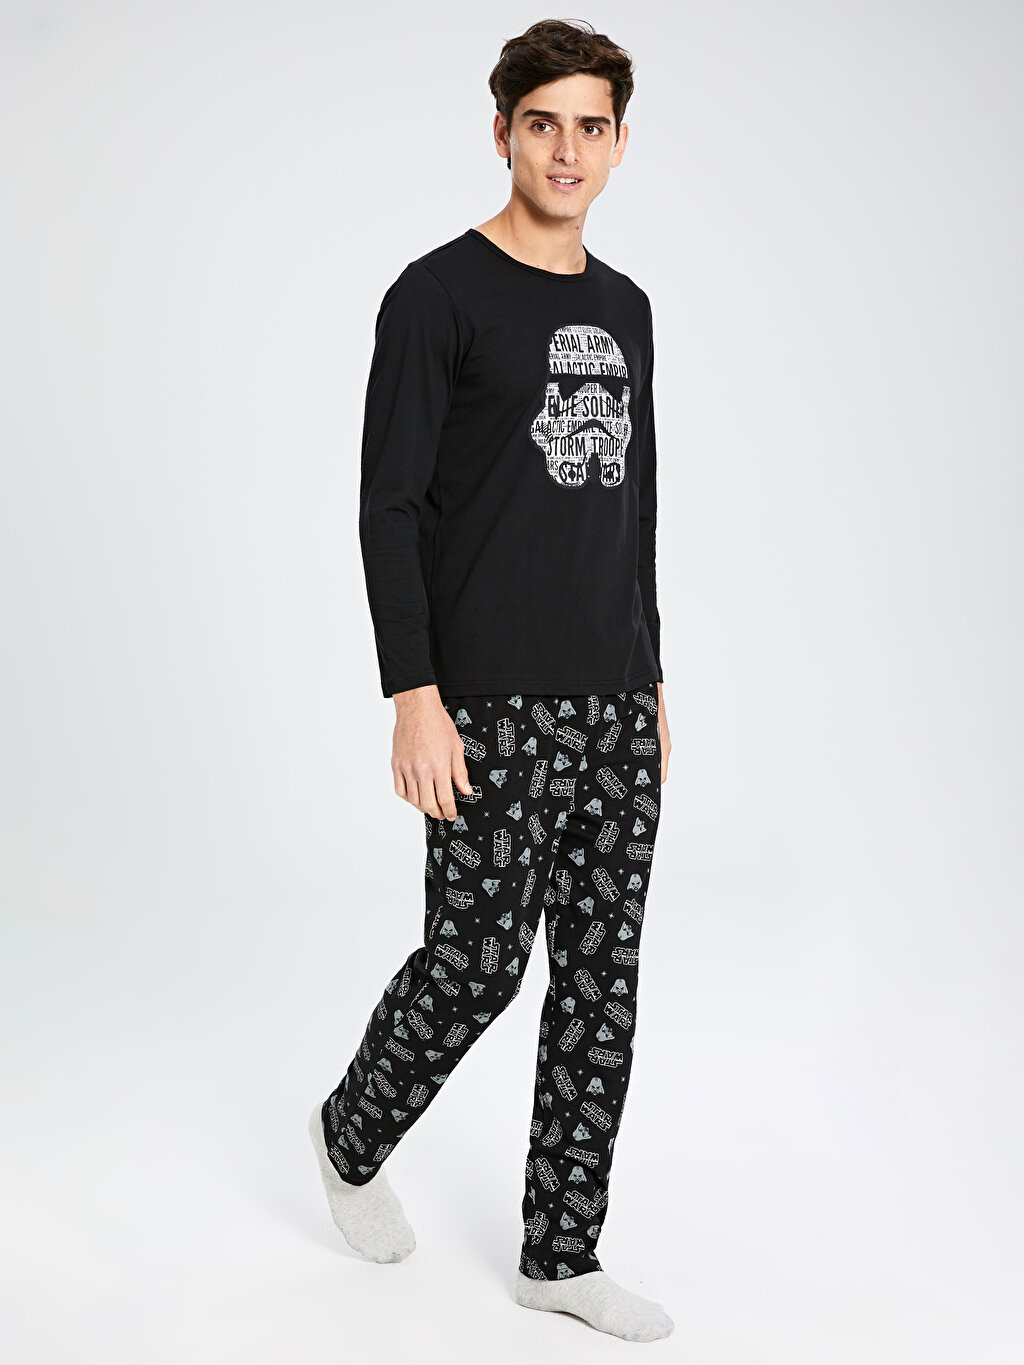 LCW Star Wars Baskılı Standart Kalıp Pijama Takımı. 4